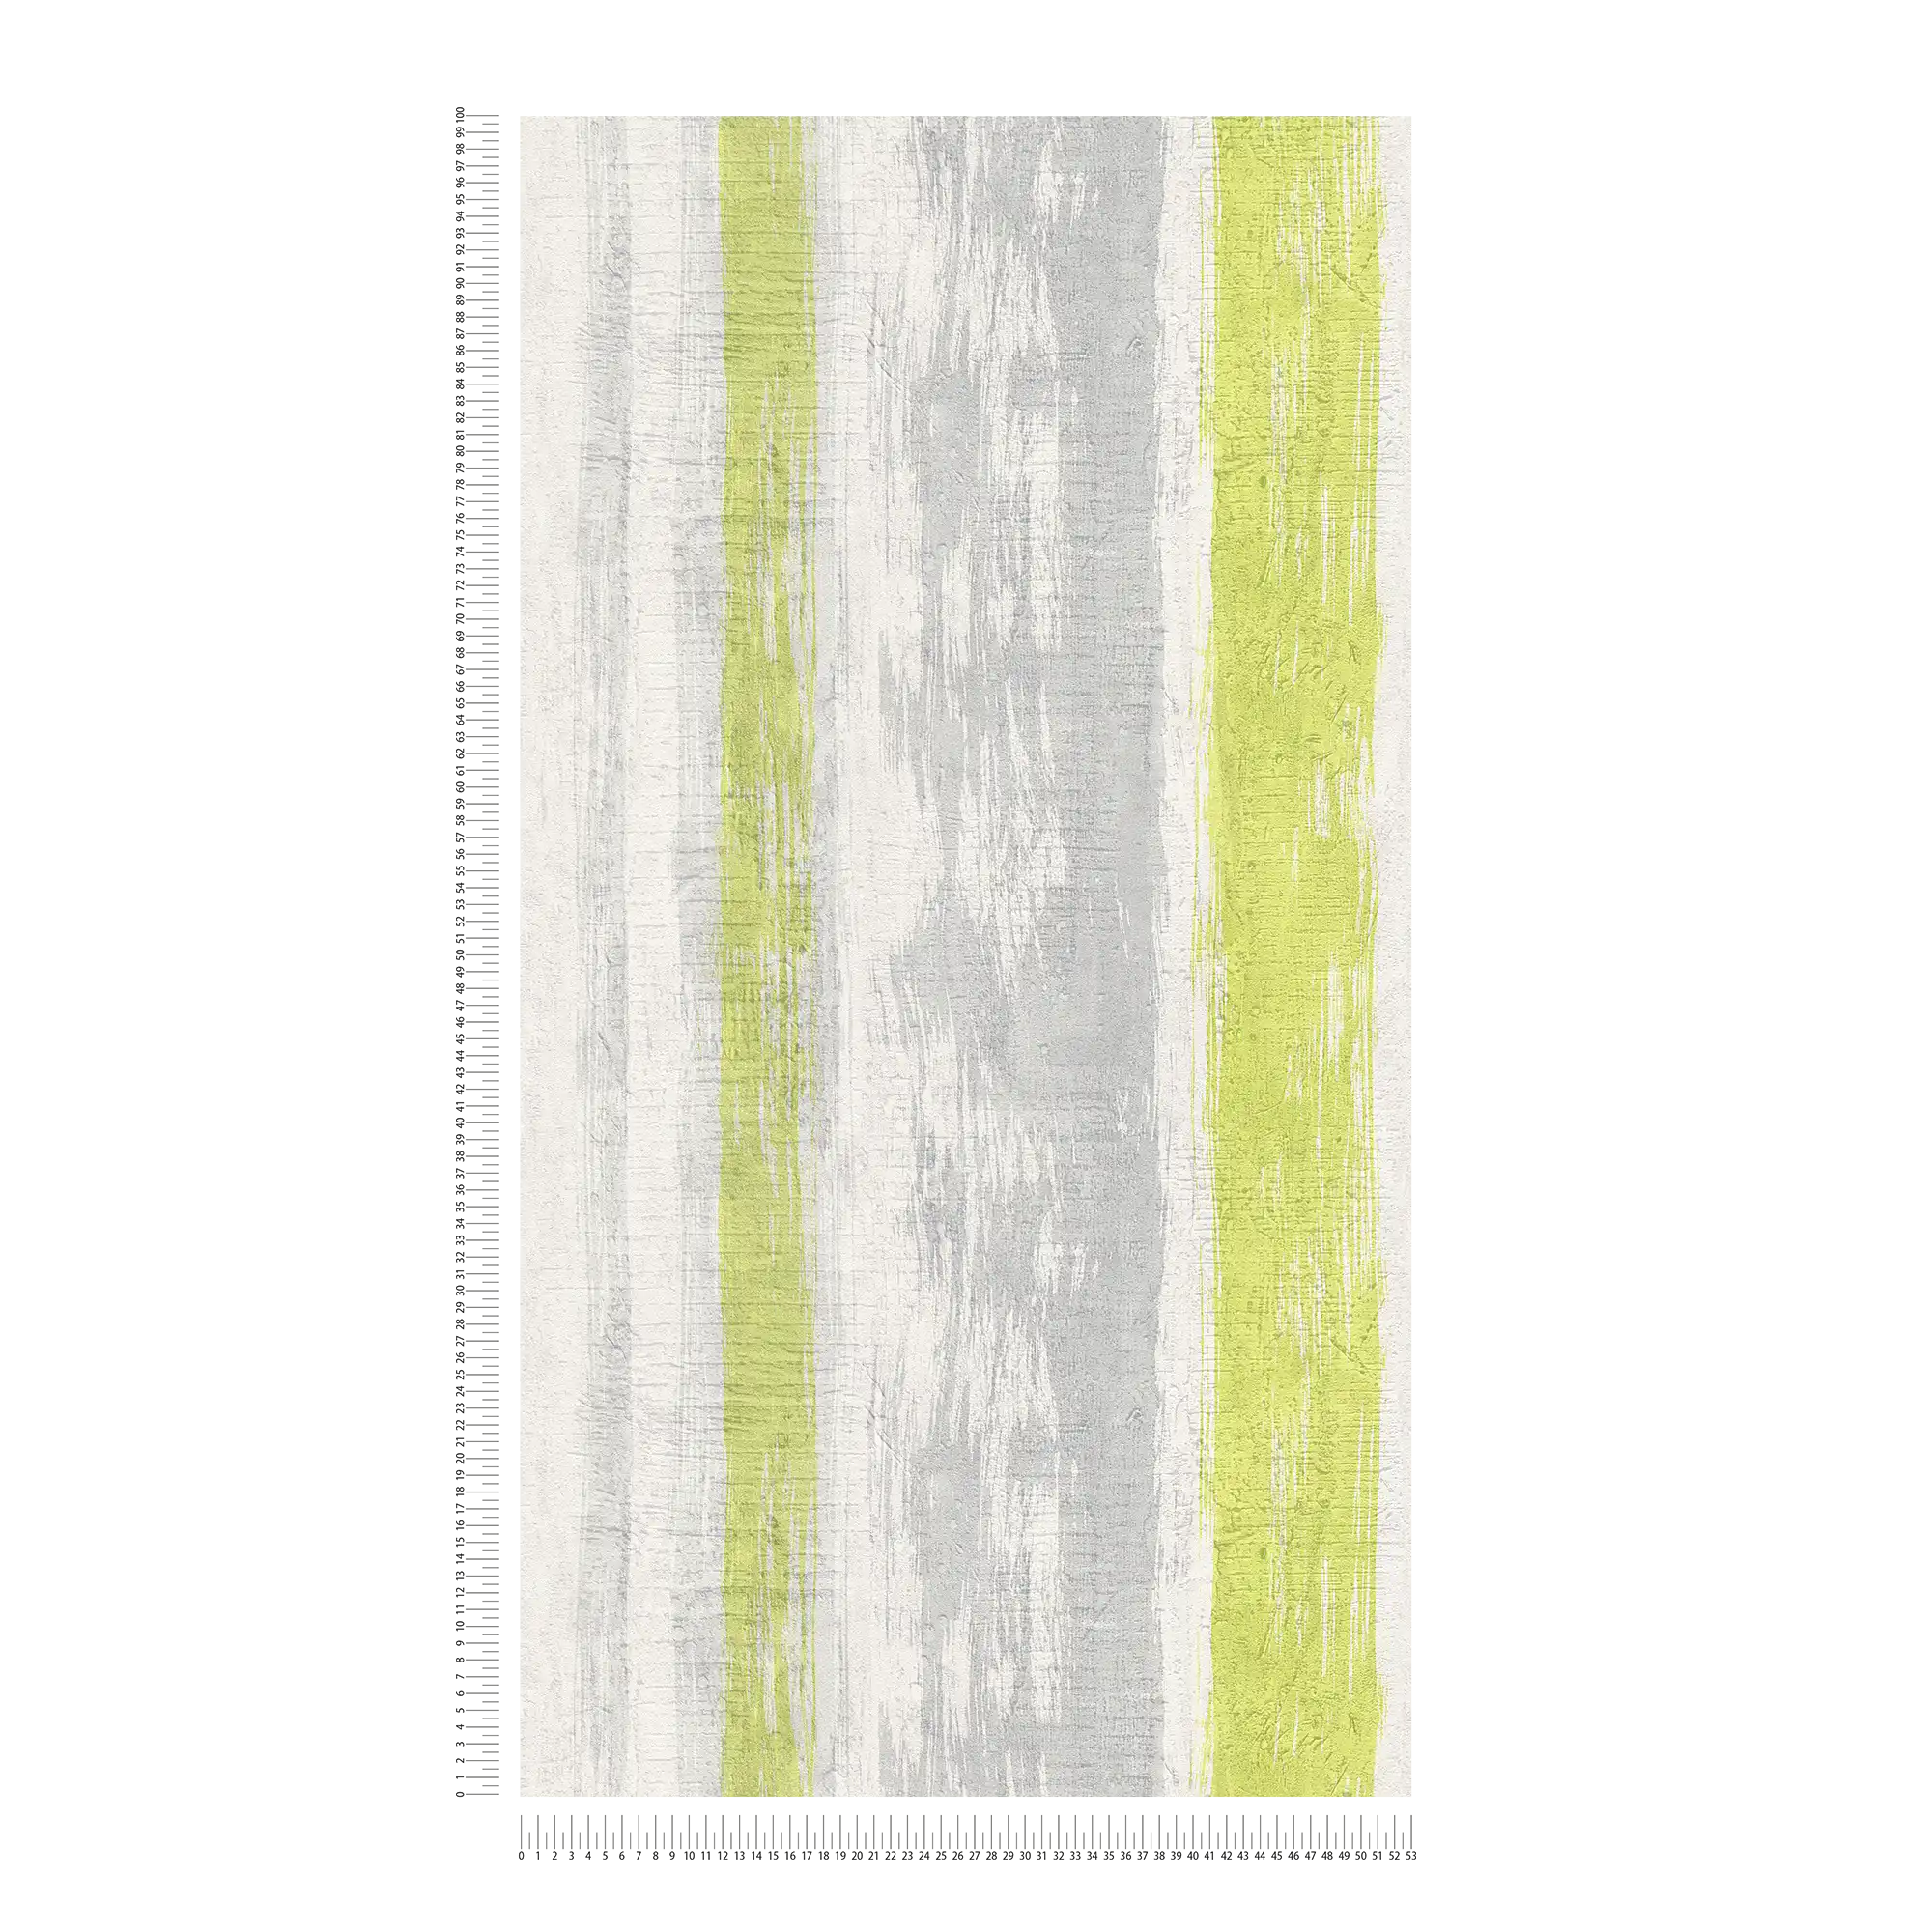             Gestreept behang met gipsstructuur & gekleurde accenten - grijs, groen, geel
        